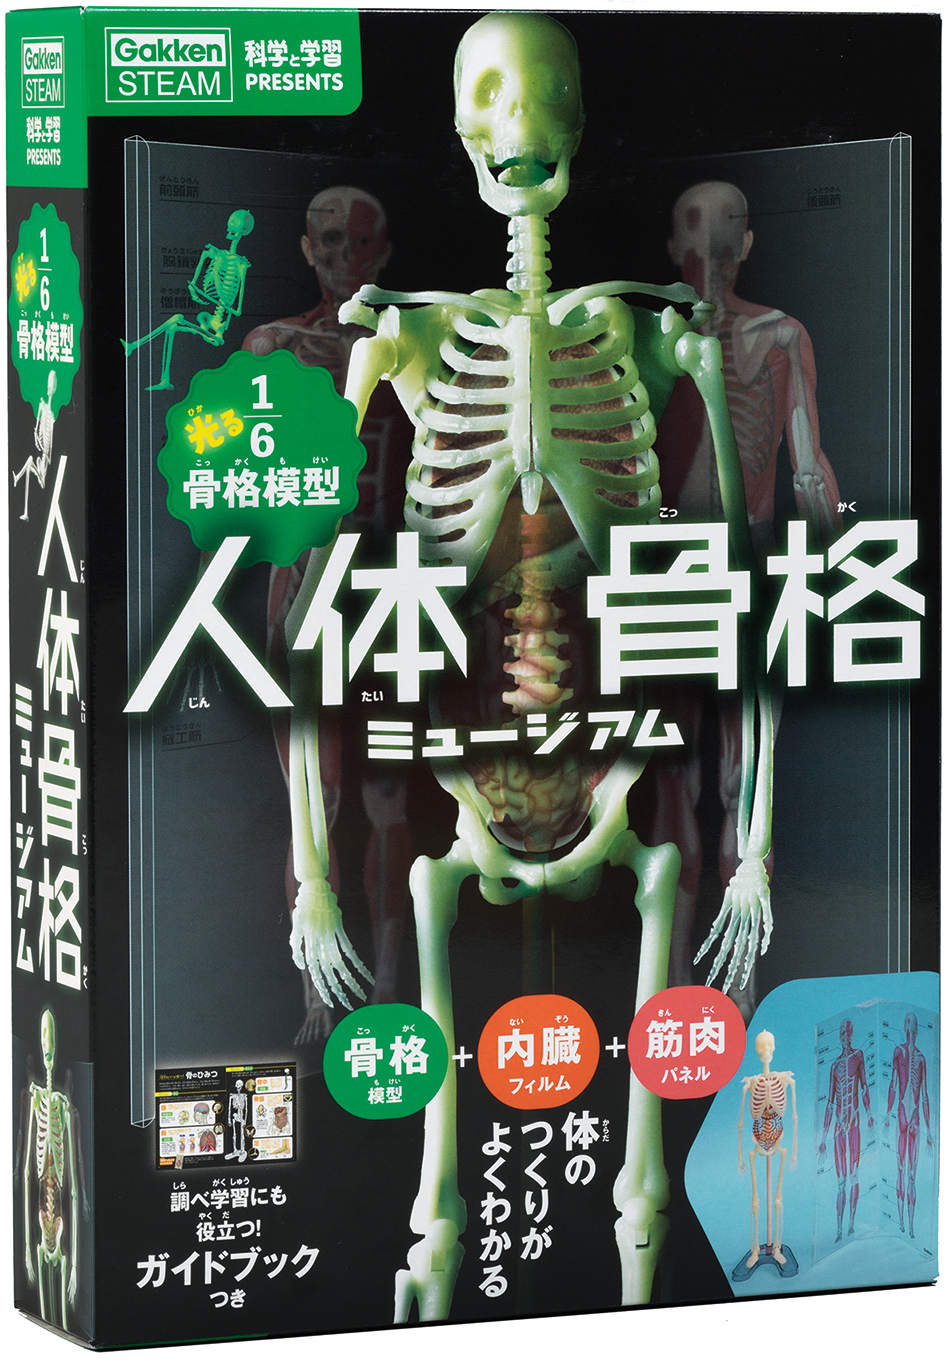 『科学と学習PRESENTS人体骨格ミュージアム 光る16骨格模型』パッケージ